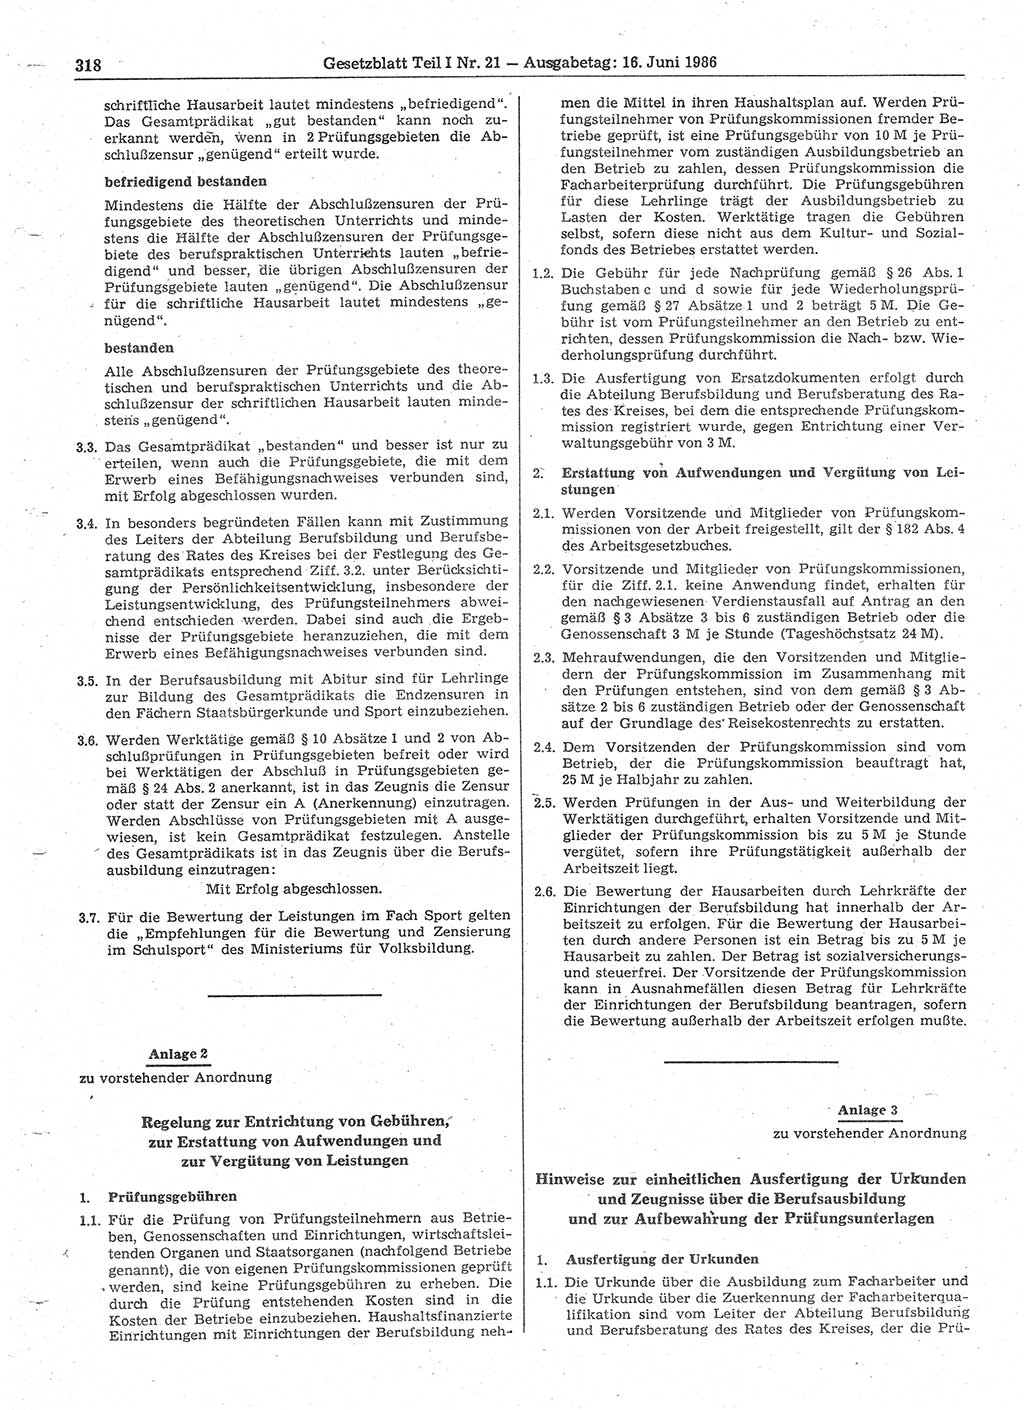 Gesetzblatt (GBl.) der Deutschen Demokratischen Republik (DDR) Teil Ⅰ 1986, Seite 318 (GBl. DDR Ⅰ 1986, S. 318)